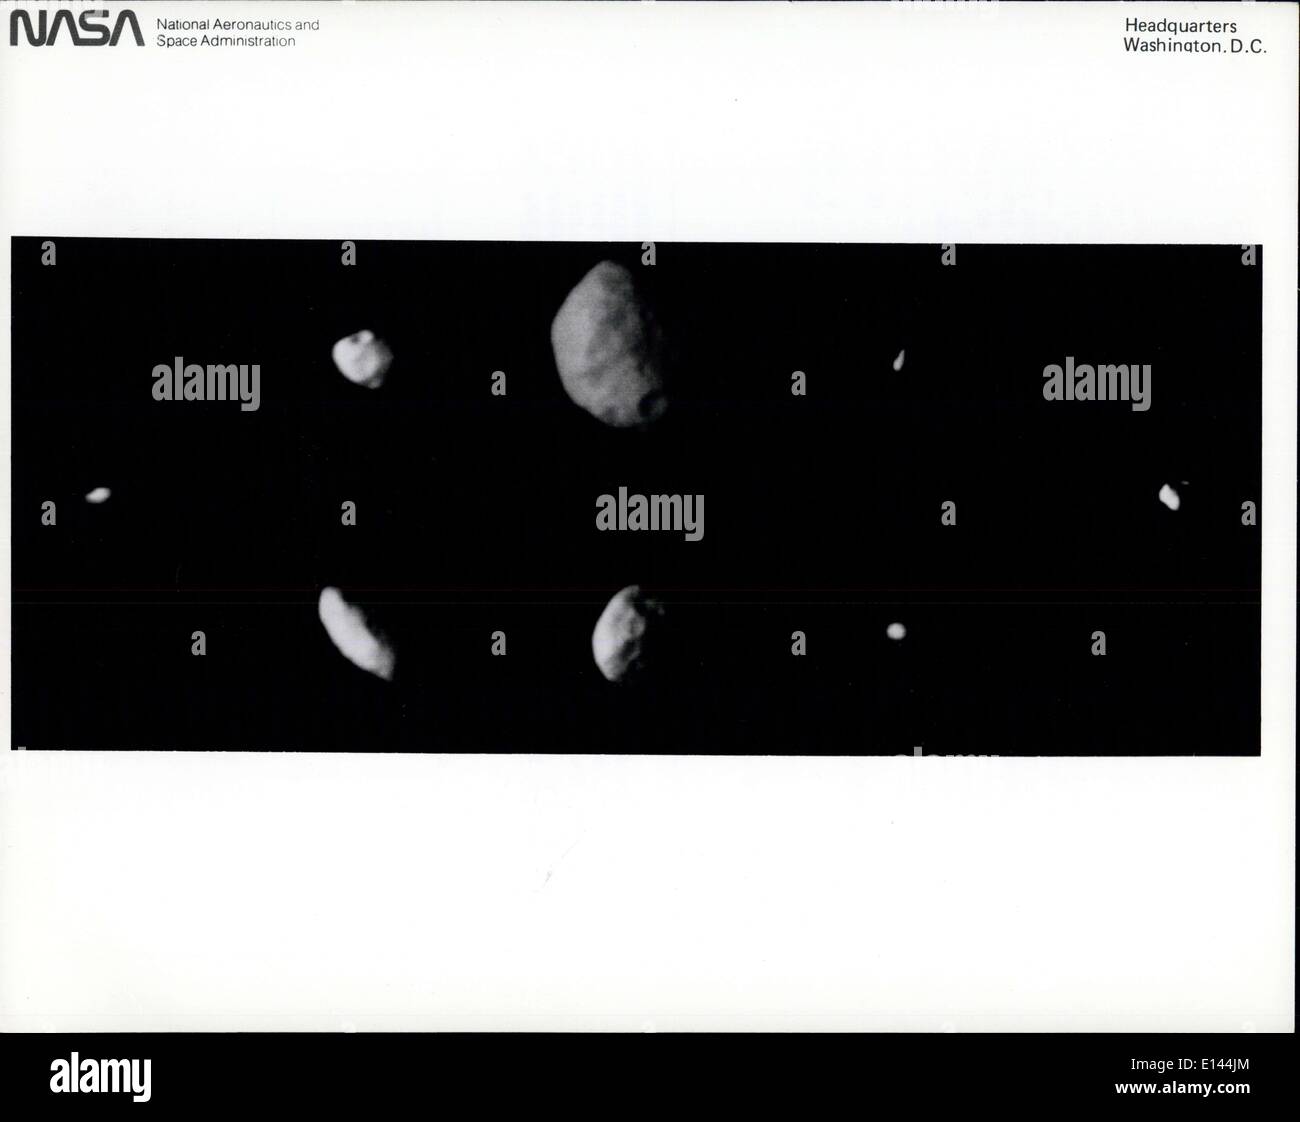 04. Apr. 2012 - Dieses Familienporträt zeigt den kleineren Satelliten des Saturn, wie er von der Voyager 2 während seines Schwingens durch das Saturn-System gesehen wurde. Diese Bilder wurden so skaliert, dass die Satelliten in echten relativen Größen angezeigt werden. Diese kleine Menge von Objekten reicht von kleinen Asteroidenwaagen bis zu fast der Größe des Saturnmondes imas. Es sind wahrscheinlich Fragmente von etwas größeren Körpern, die während der Bombardierungsphase, die Akkretion des Saturnsystems folgte, aufgebrochen wurden. Wissenschaftler glauben, dass es sich meist um eisige Körper mit einer Mischung aus Meteoritengestein Stockfoto